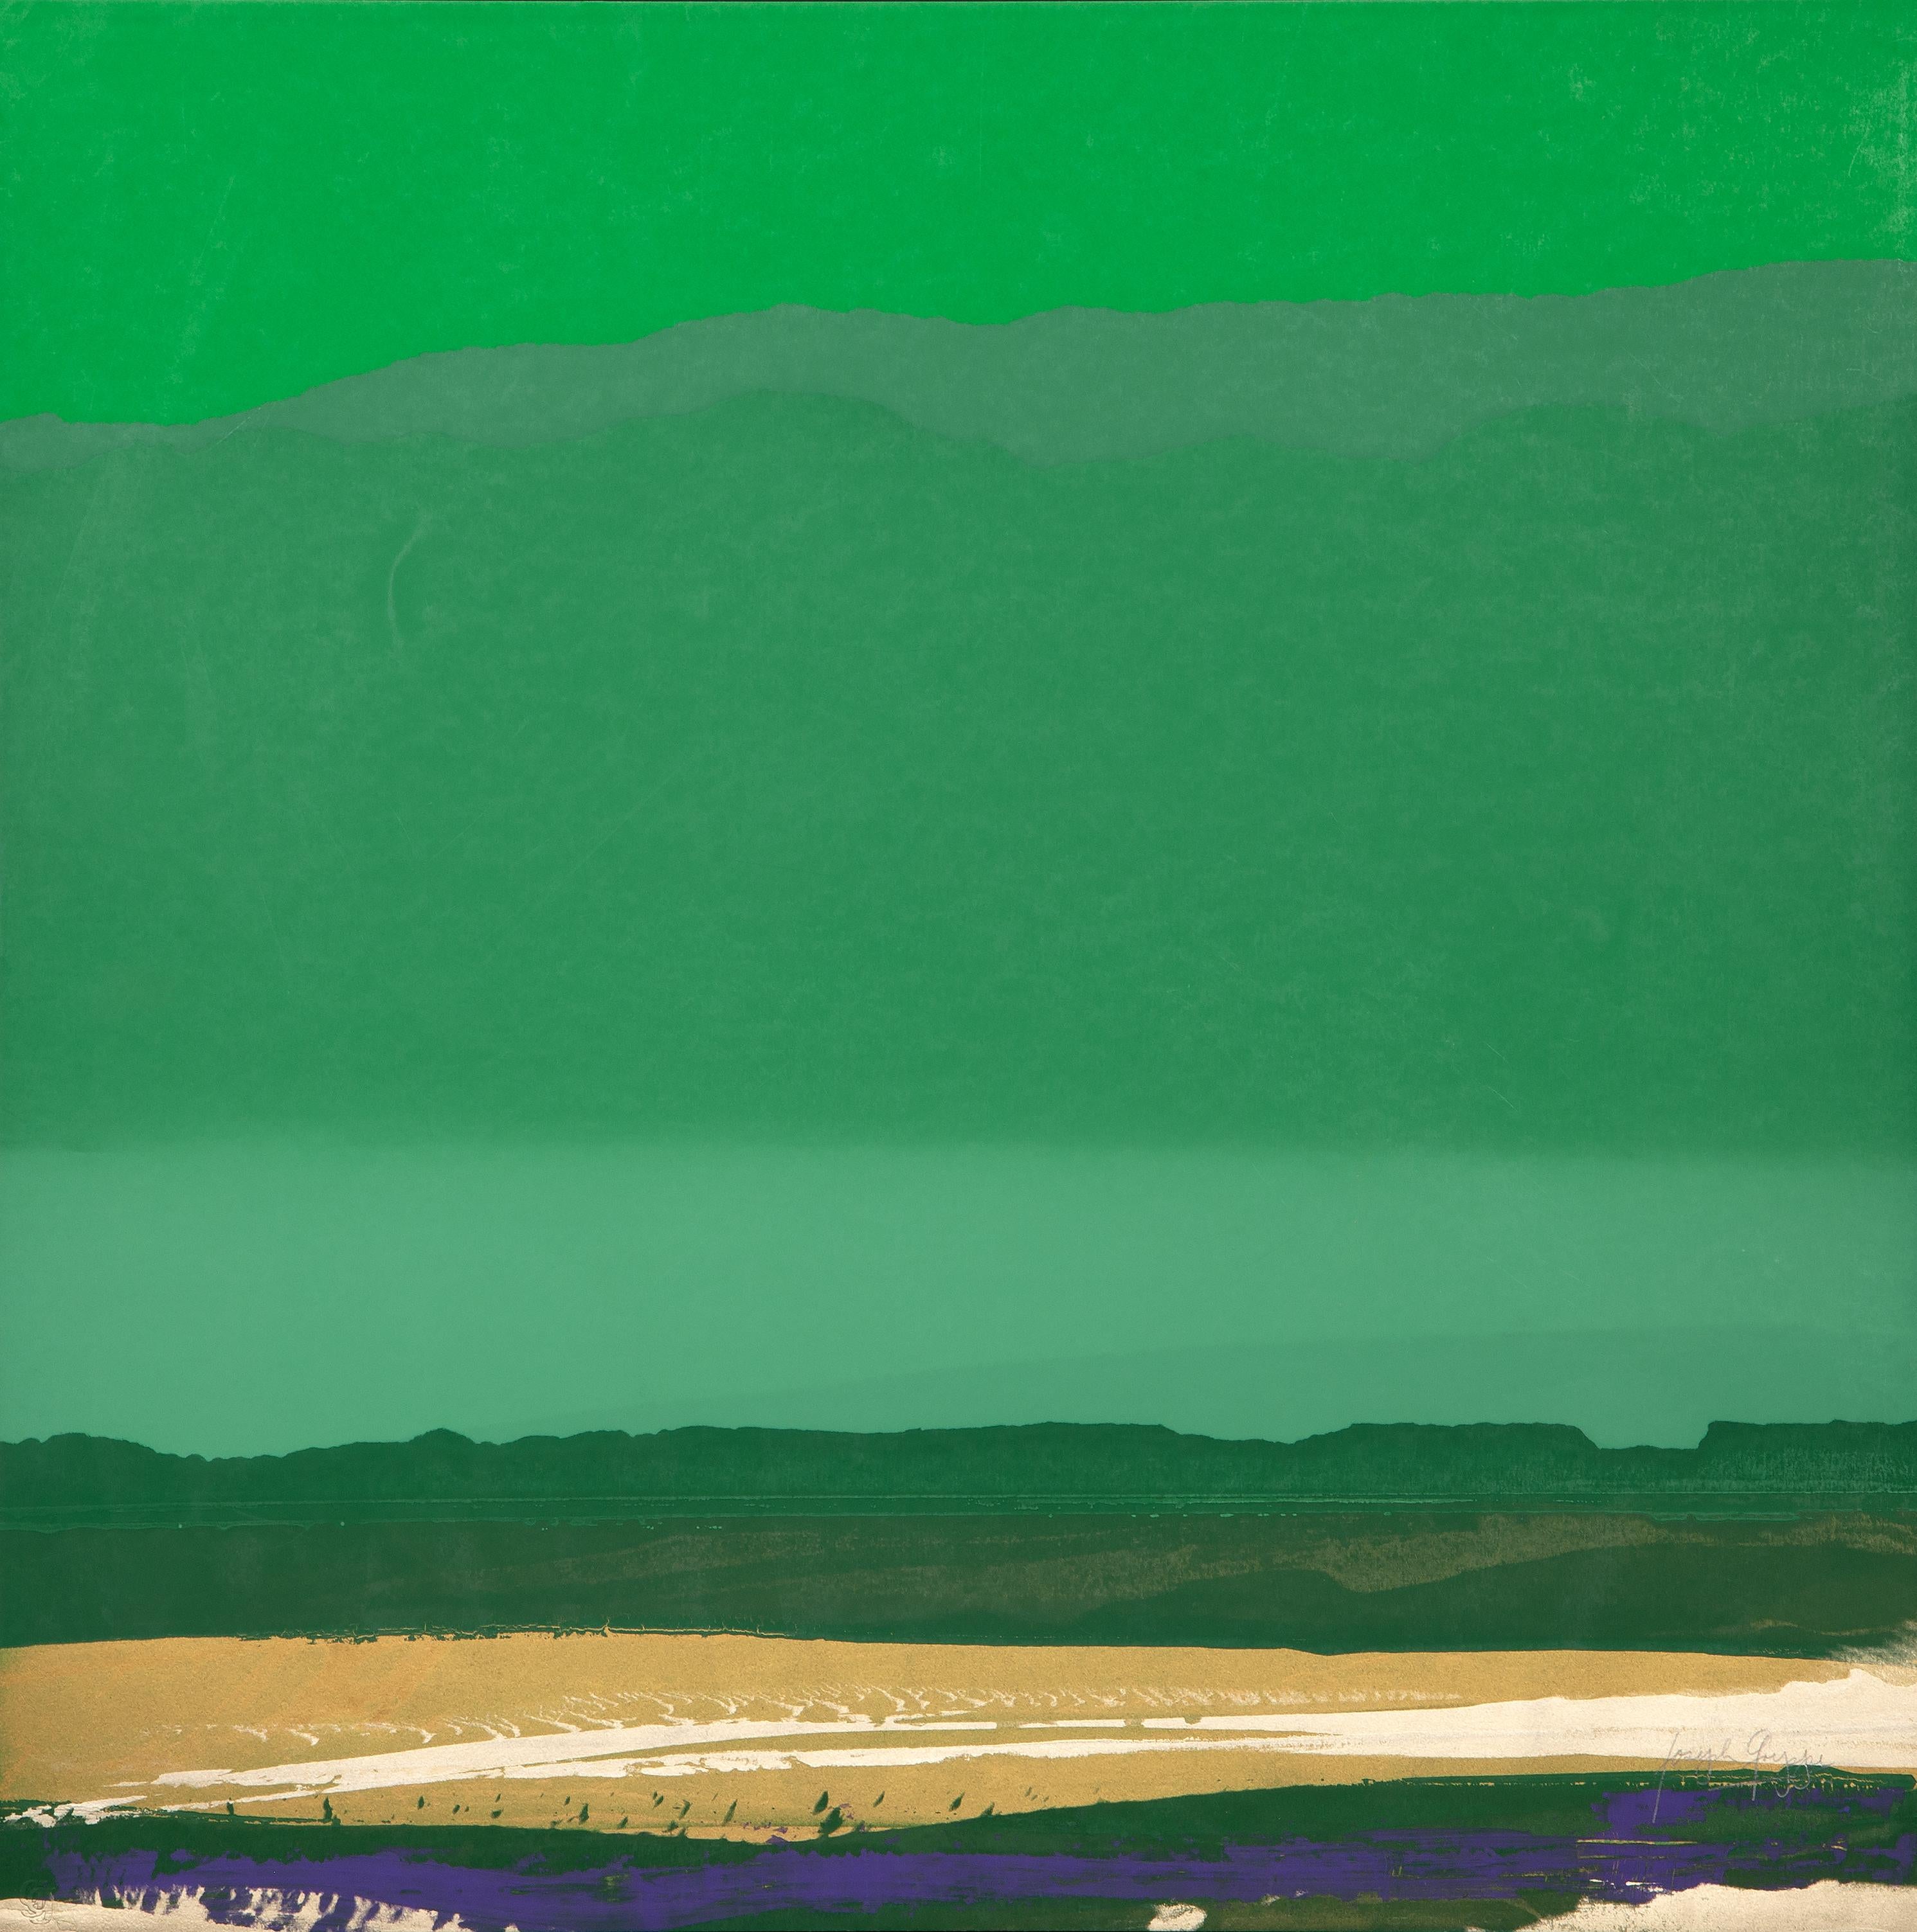 Grün, Gold, Blau Landschaft
Joseph Grippi, Amerikaner (1924-2001)
Siebdruck Monoprint, rechts unten mit Bleistift signiert
Größe: 30 x 30 Zoll (76,2 x 76,2 cm)